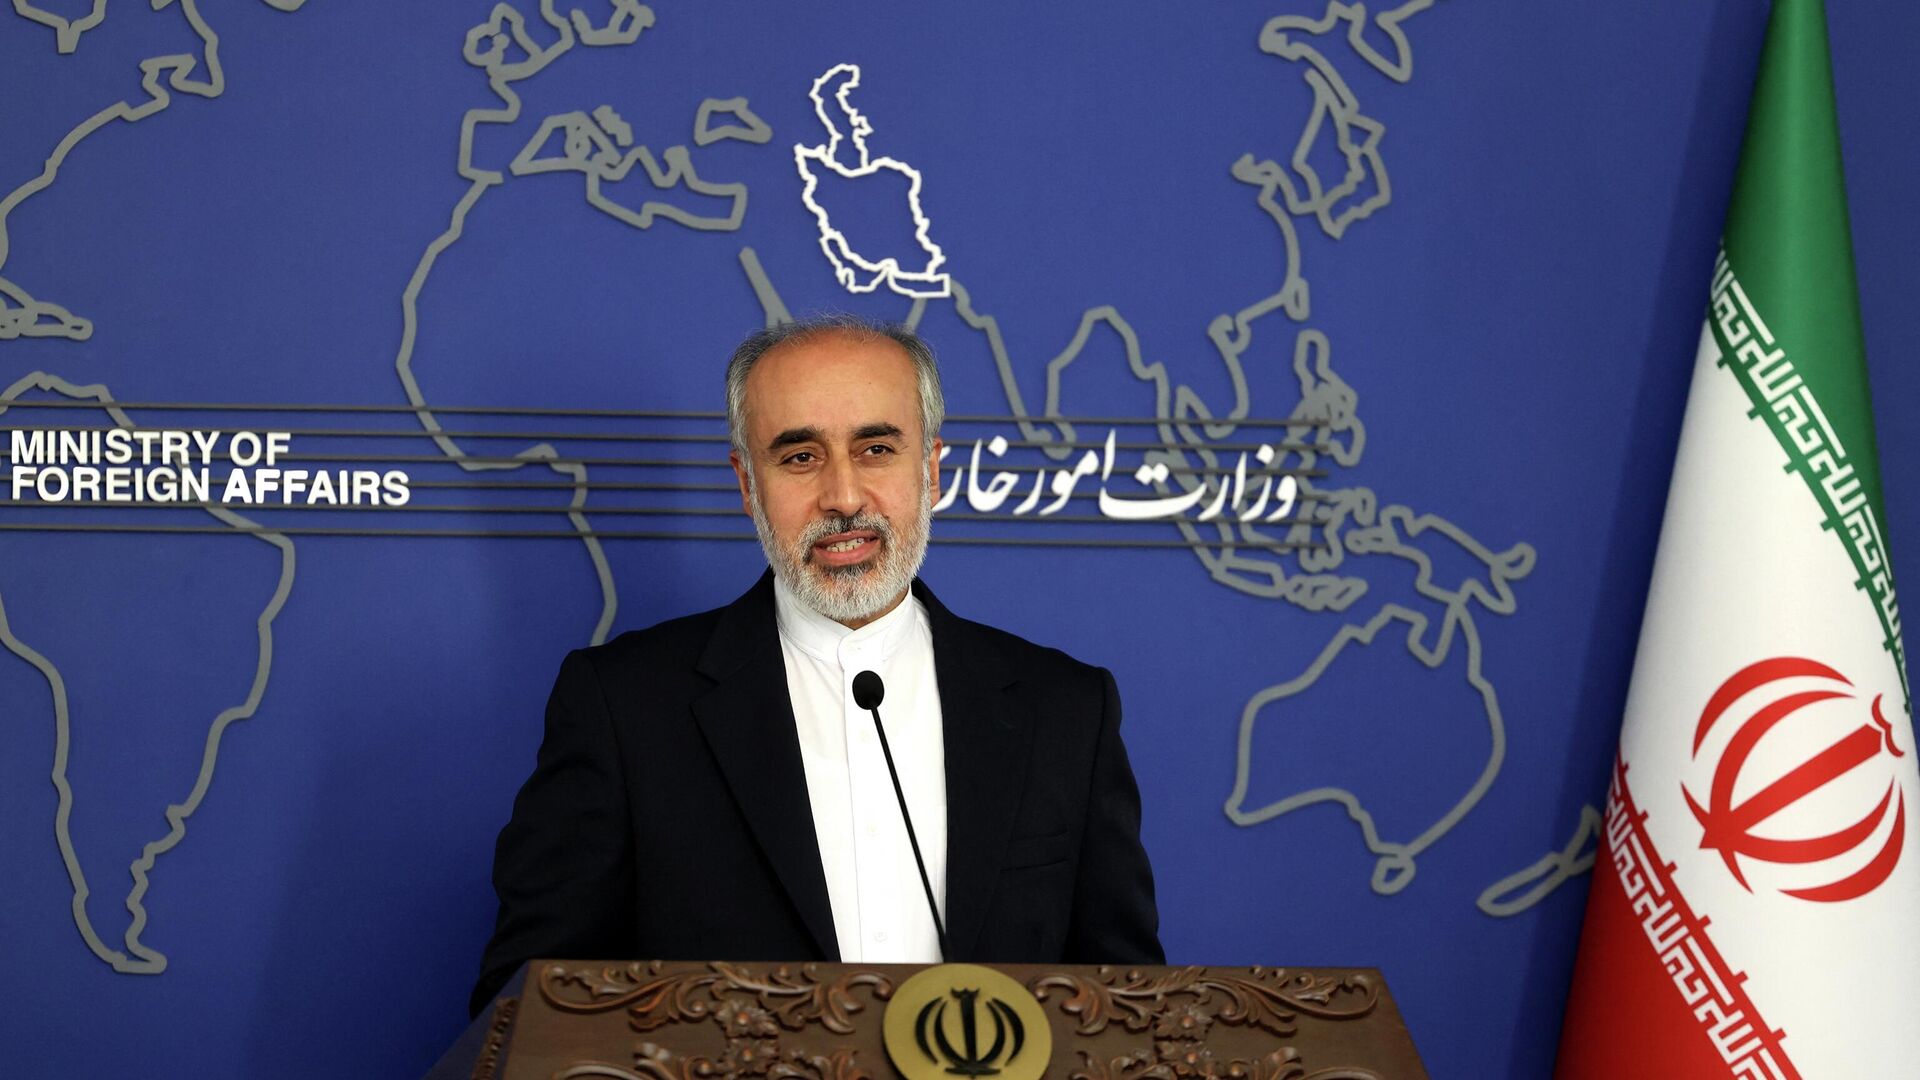 الخارجية الإيرانية : طهران تمتلك علاقات وثيقة مع بغداد وأنقرة .... والإرهاب خطر مشترك على الدول الثلاث